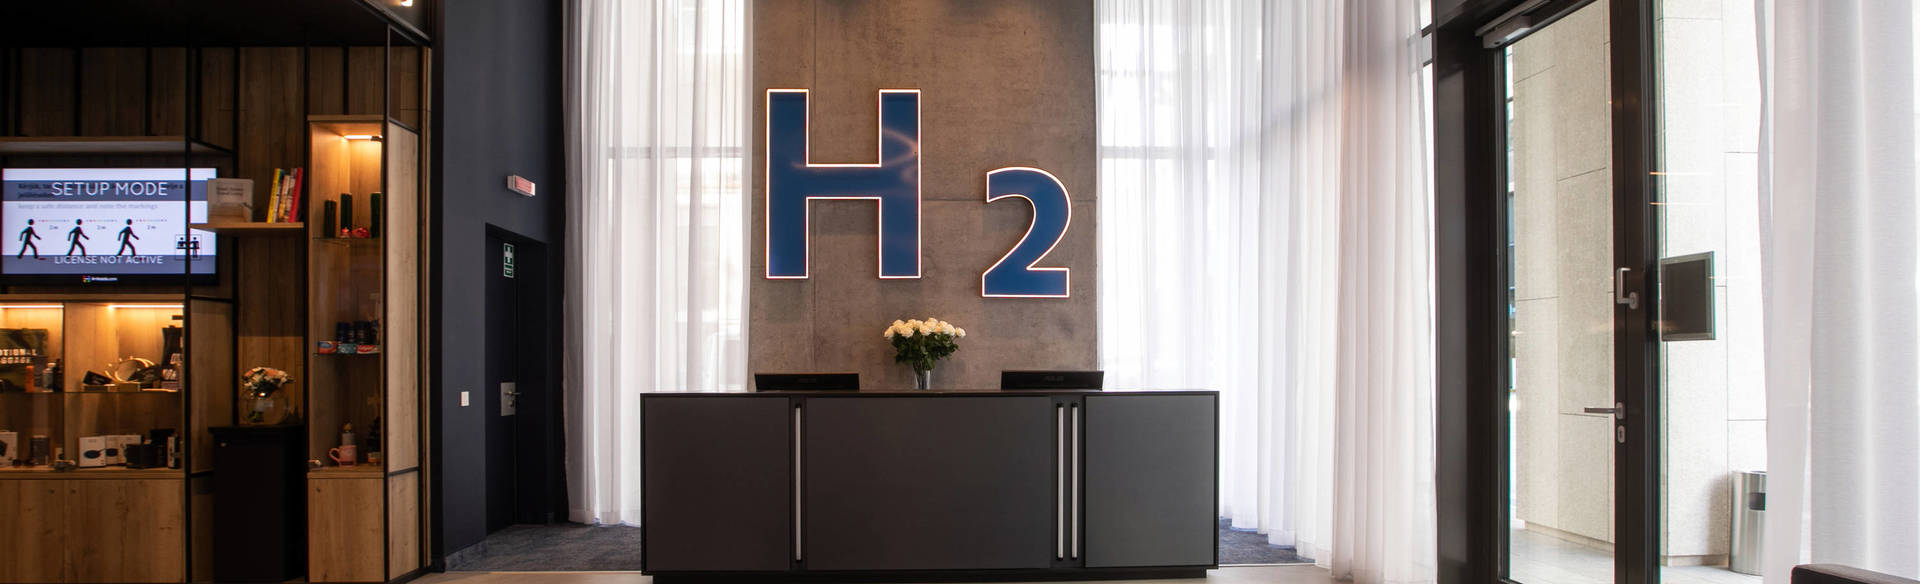 Reviews: H2 Hotel Budapest